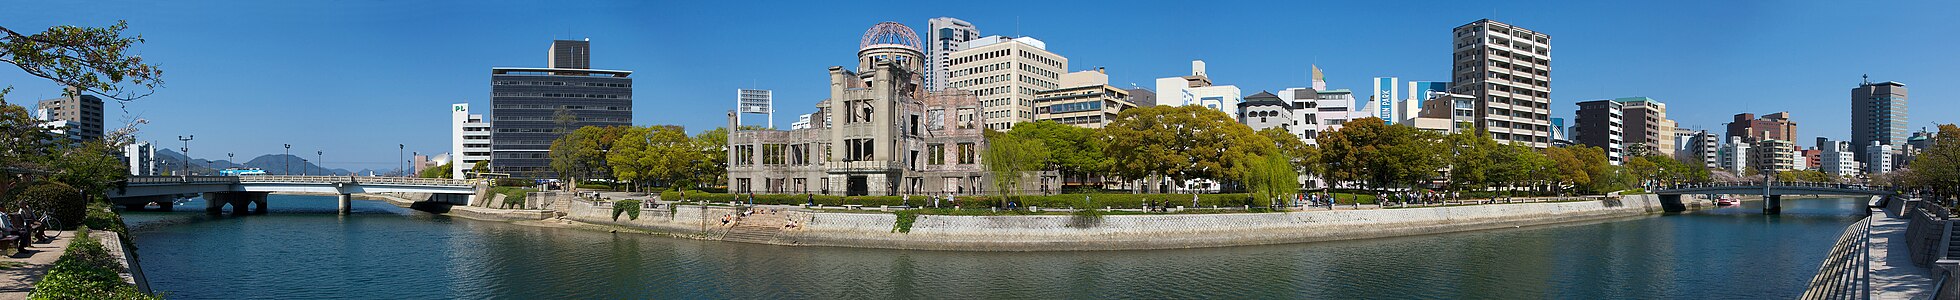 Hiroşima Barış Anıtı adıyla da bilinen Atom Bombası Kubbesi ve çevresinin panoramik manzarası.(Üreten:User:Deanpemberton)